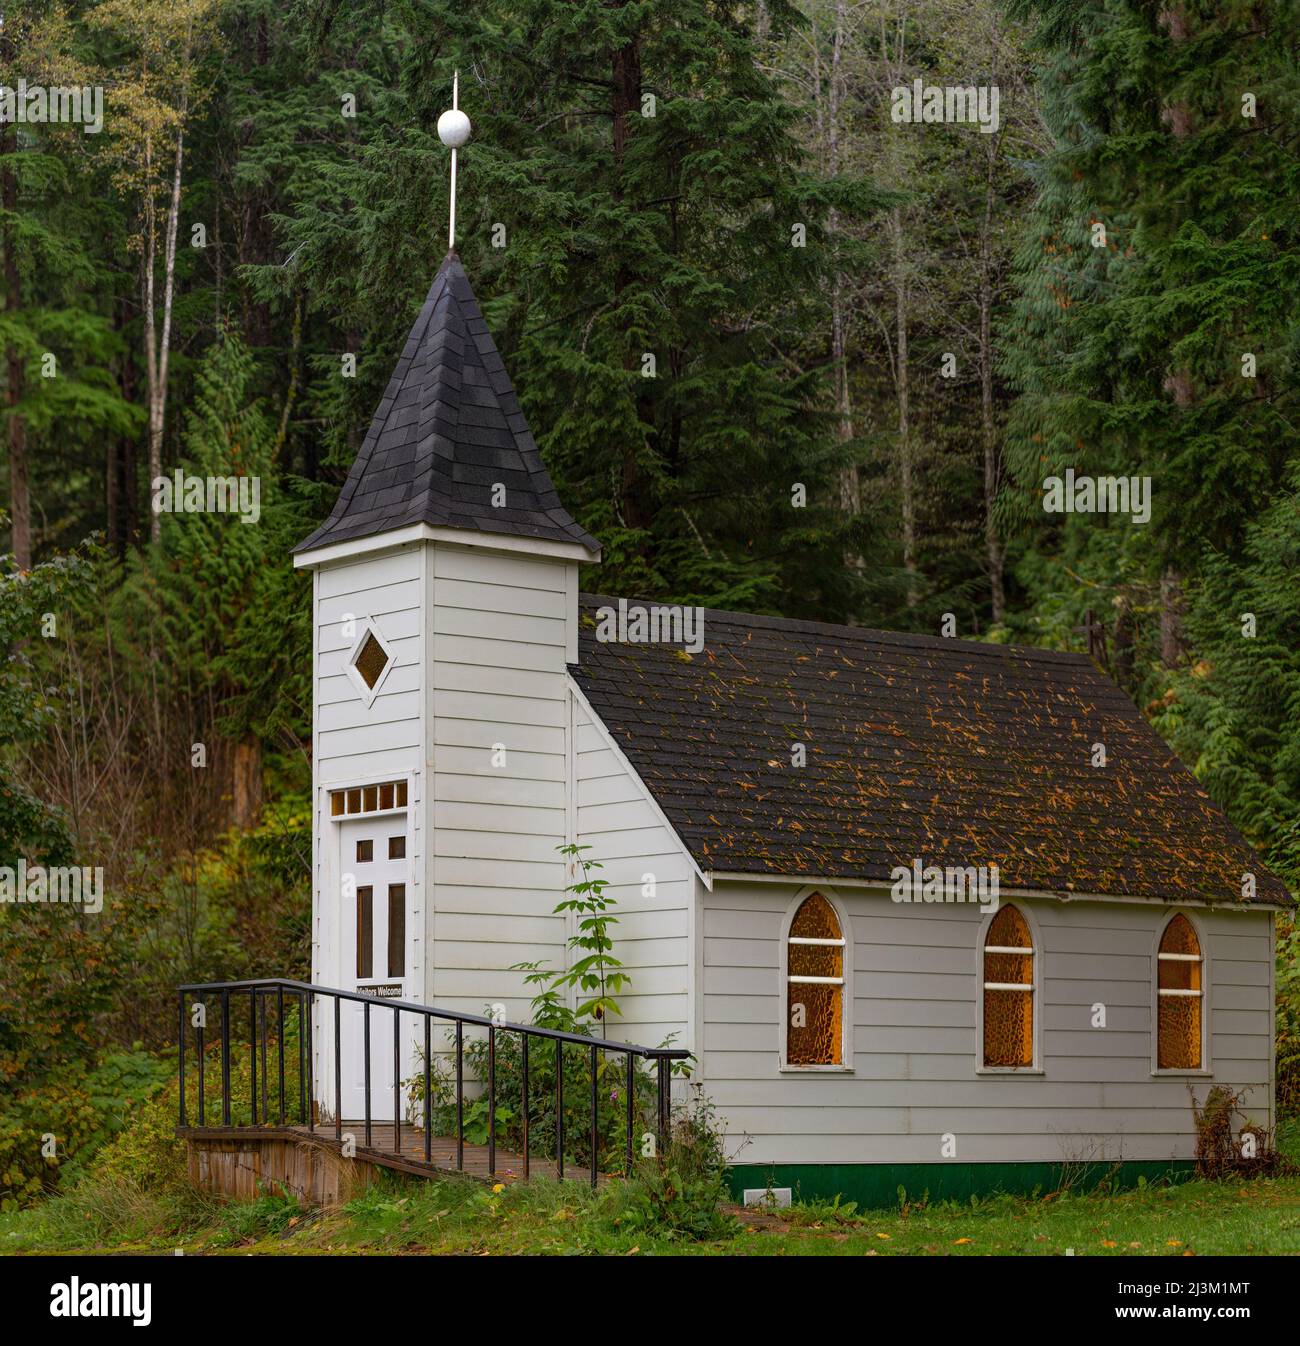 Église de campagne blanche avec clocher dans une zone forestière; Colombie-Britannique, Canada Banque D'Images